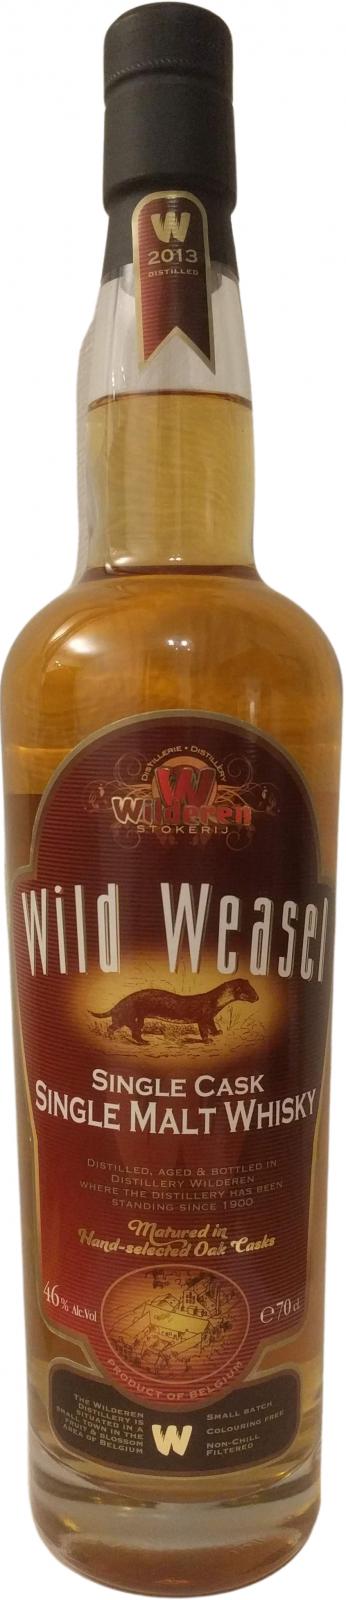 Wild Weasel 2013 Single Cask 23 46% 700ml